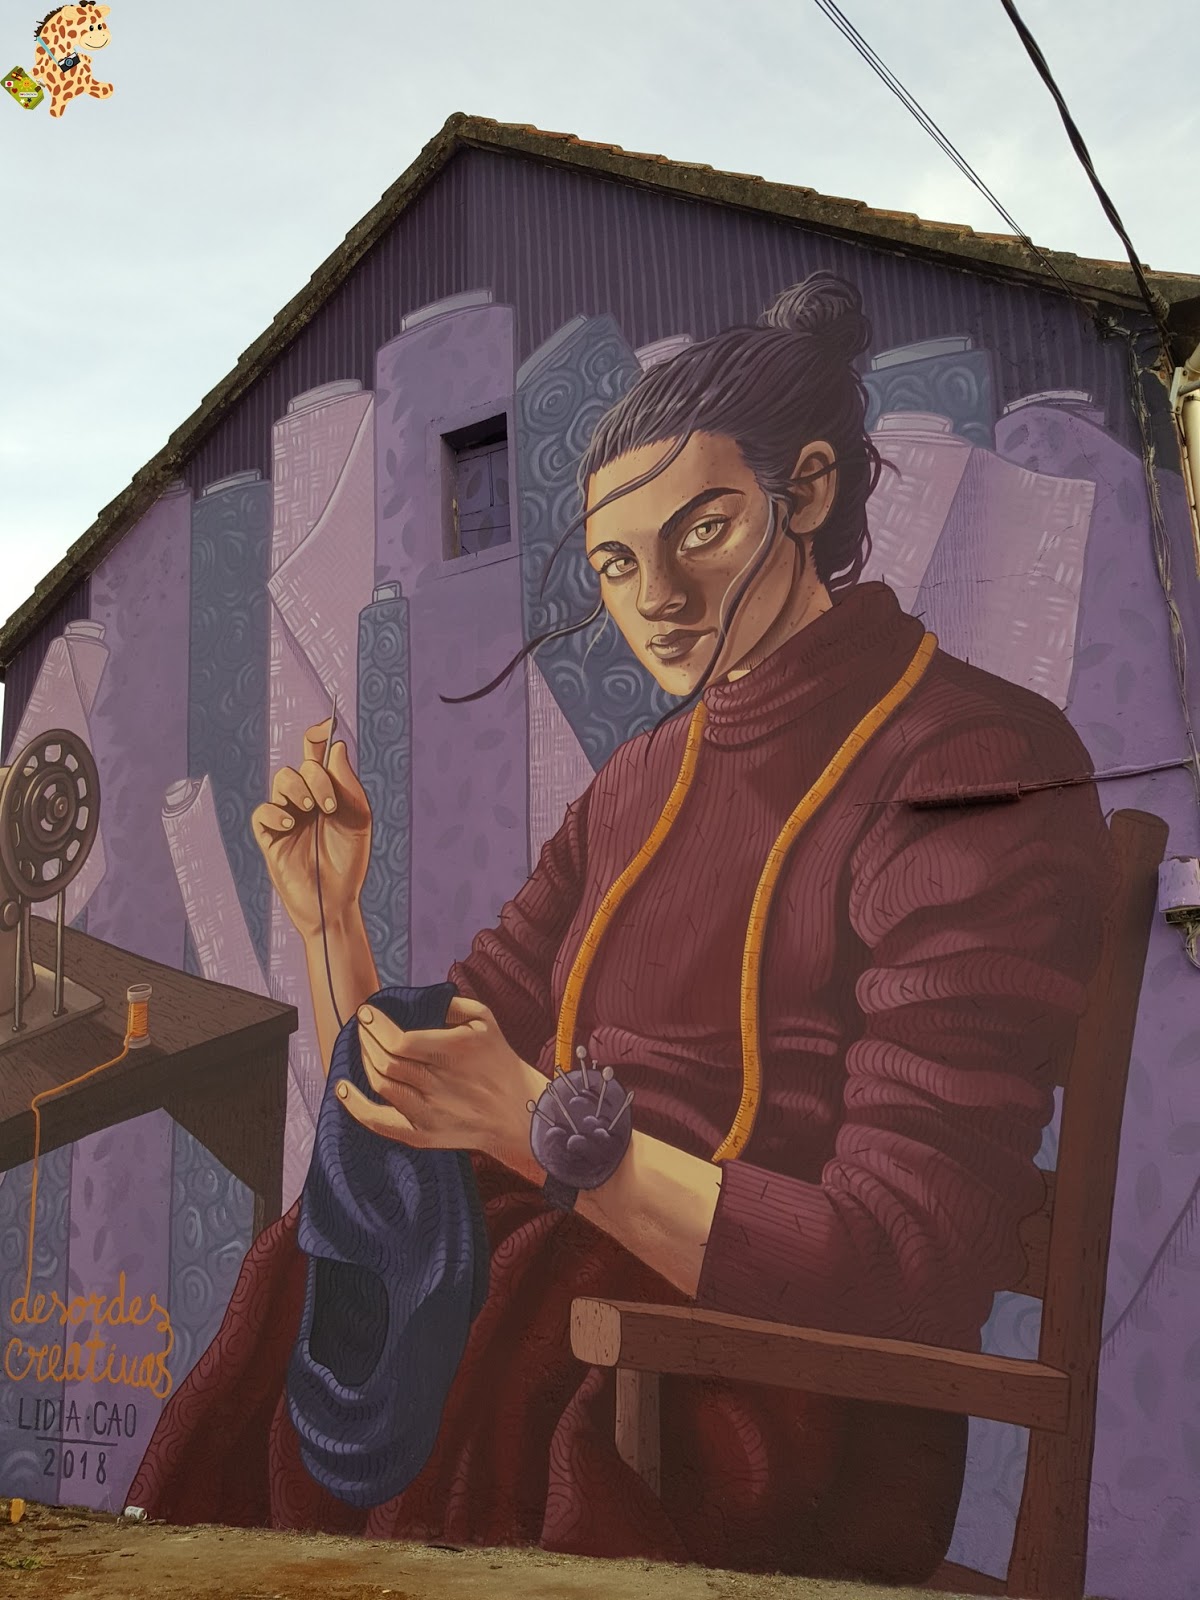 Ruta por los murales de Ordes – A Coruña